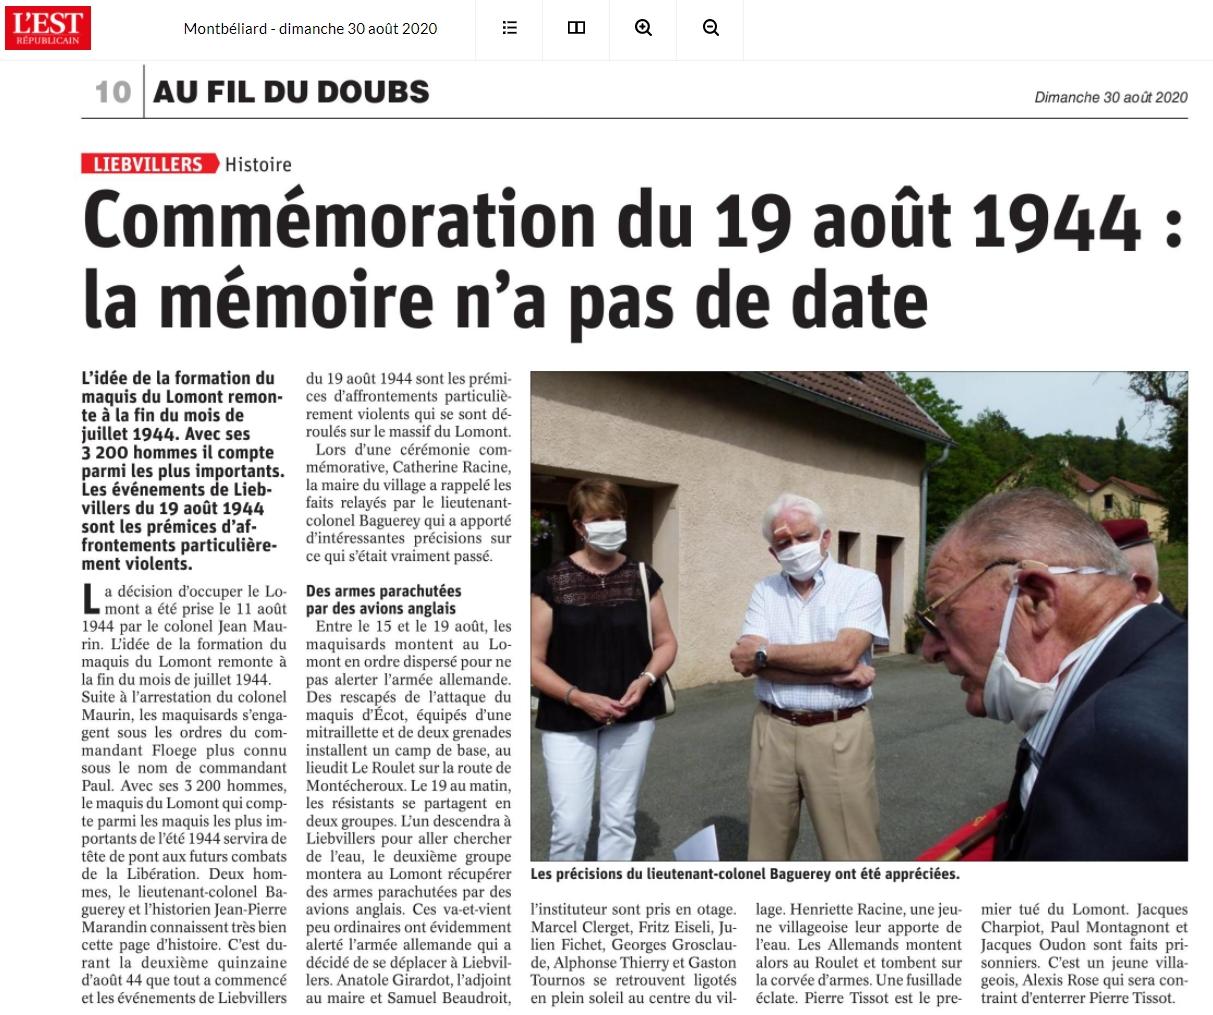 200830 est rep liebvillers commemoration 19 aout 1944